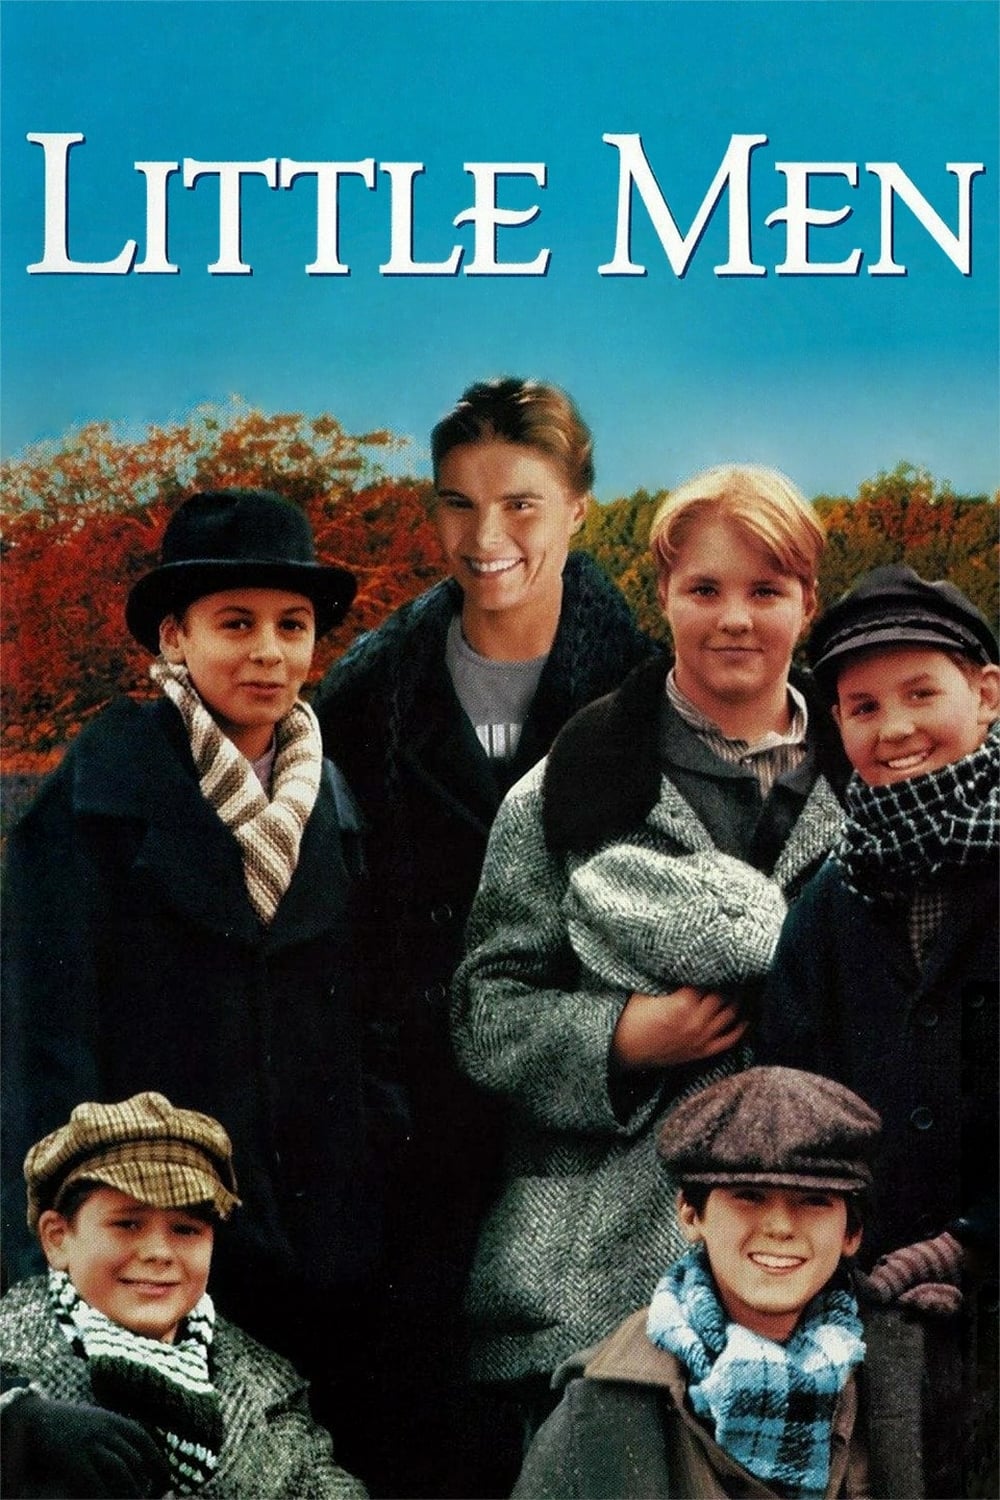 Little Men (1998)